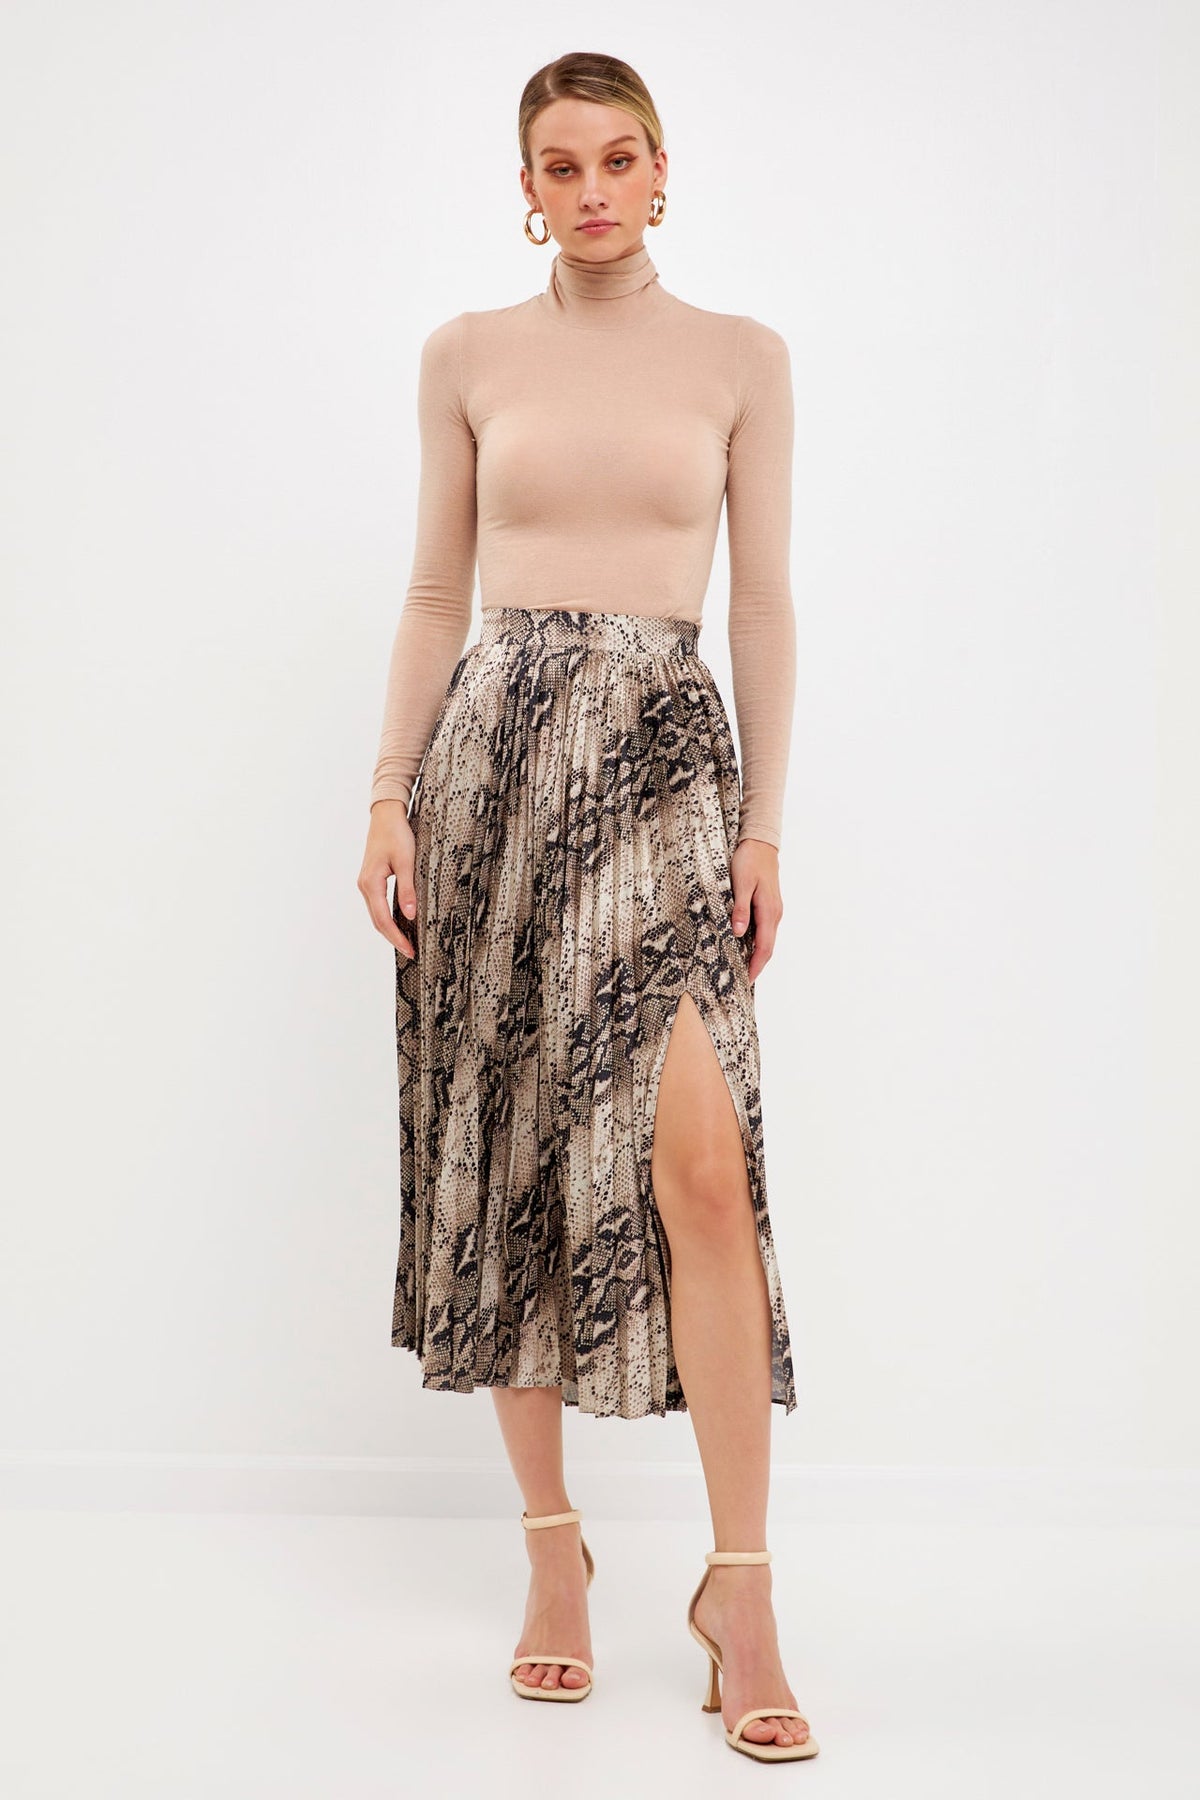 Snakeskin Pleated Midi Skirt